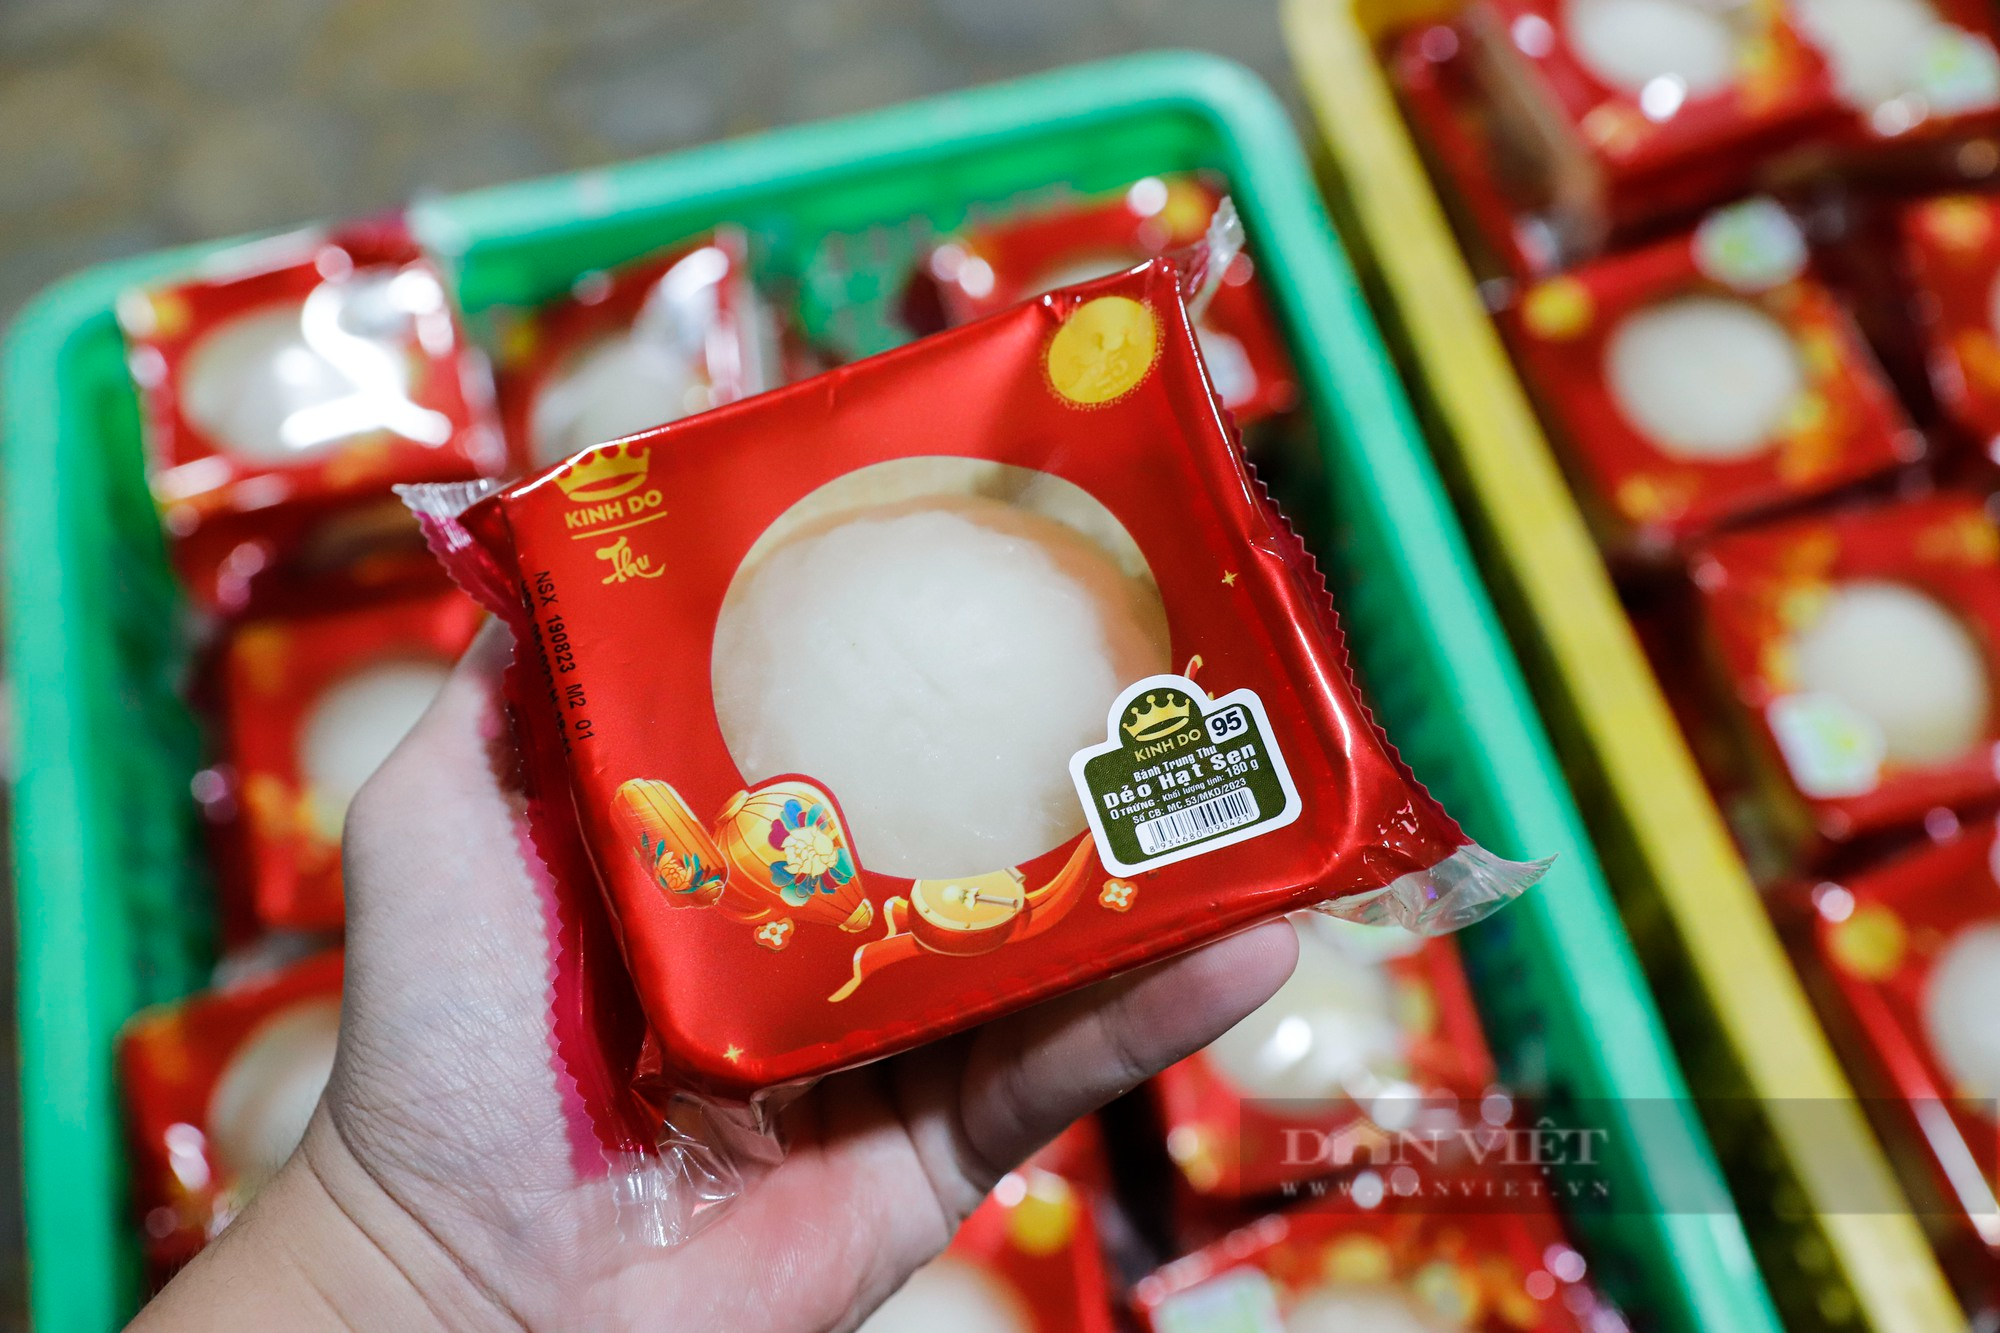 Bánh Trung thu đại hạ giá bán tràn lan vỉa hè Hà Nội với giá chỉ 25.000 đồng - Ảnh 3.